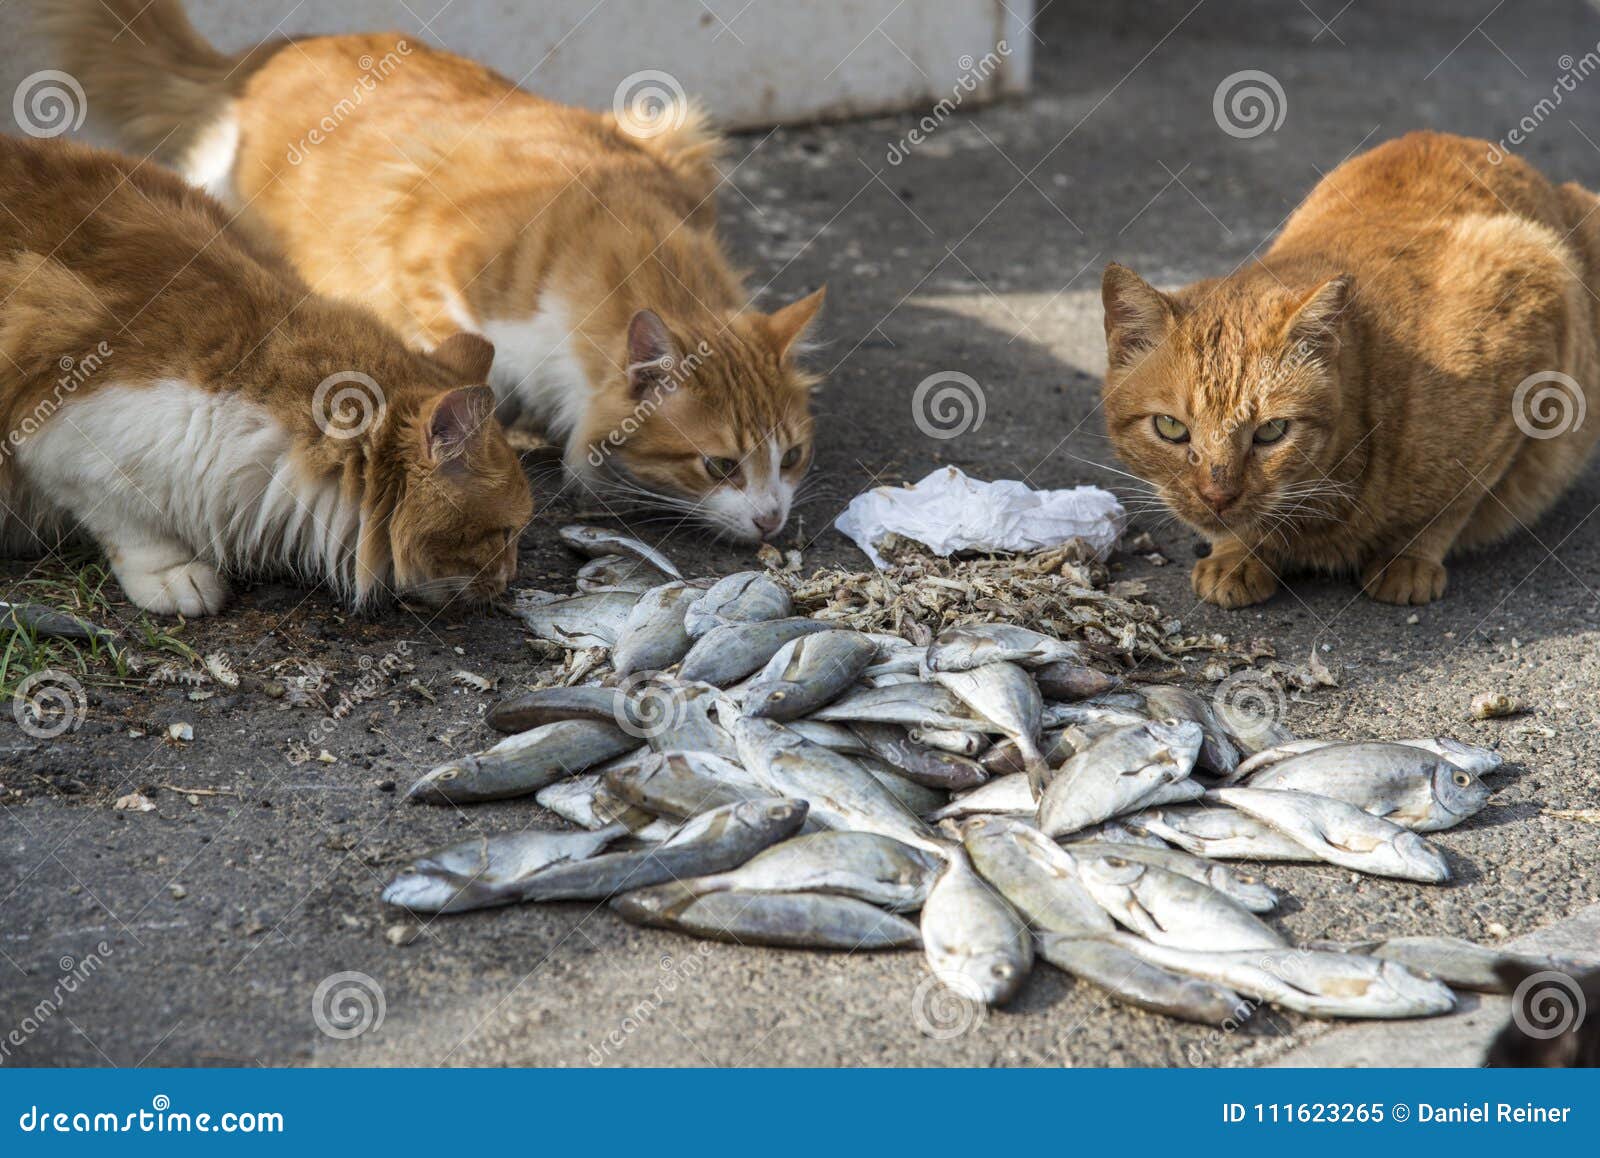 Сырую рыбу собаке. Кот жрет рыбу. Коты на Рыбном рынке. Кот с рыбой. Кот и много рыбы.